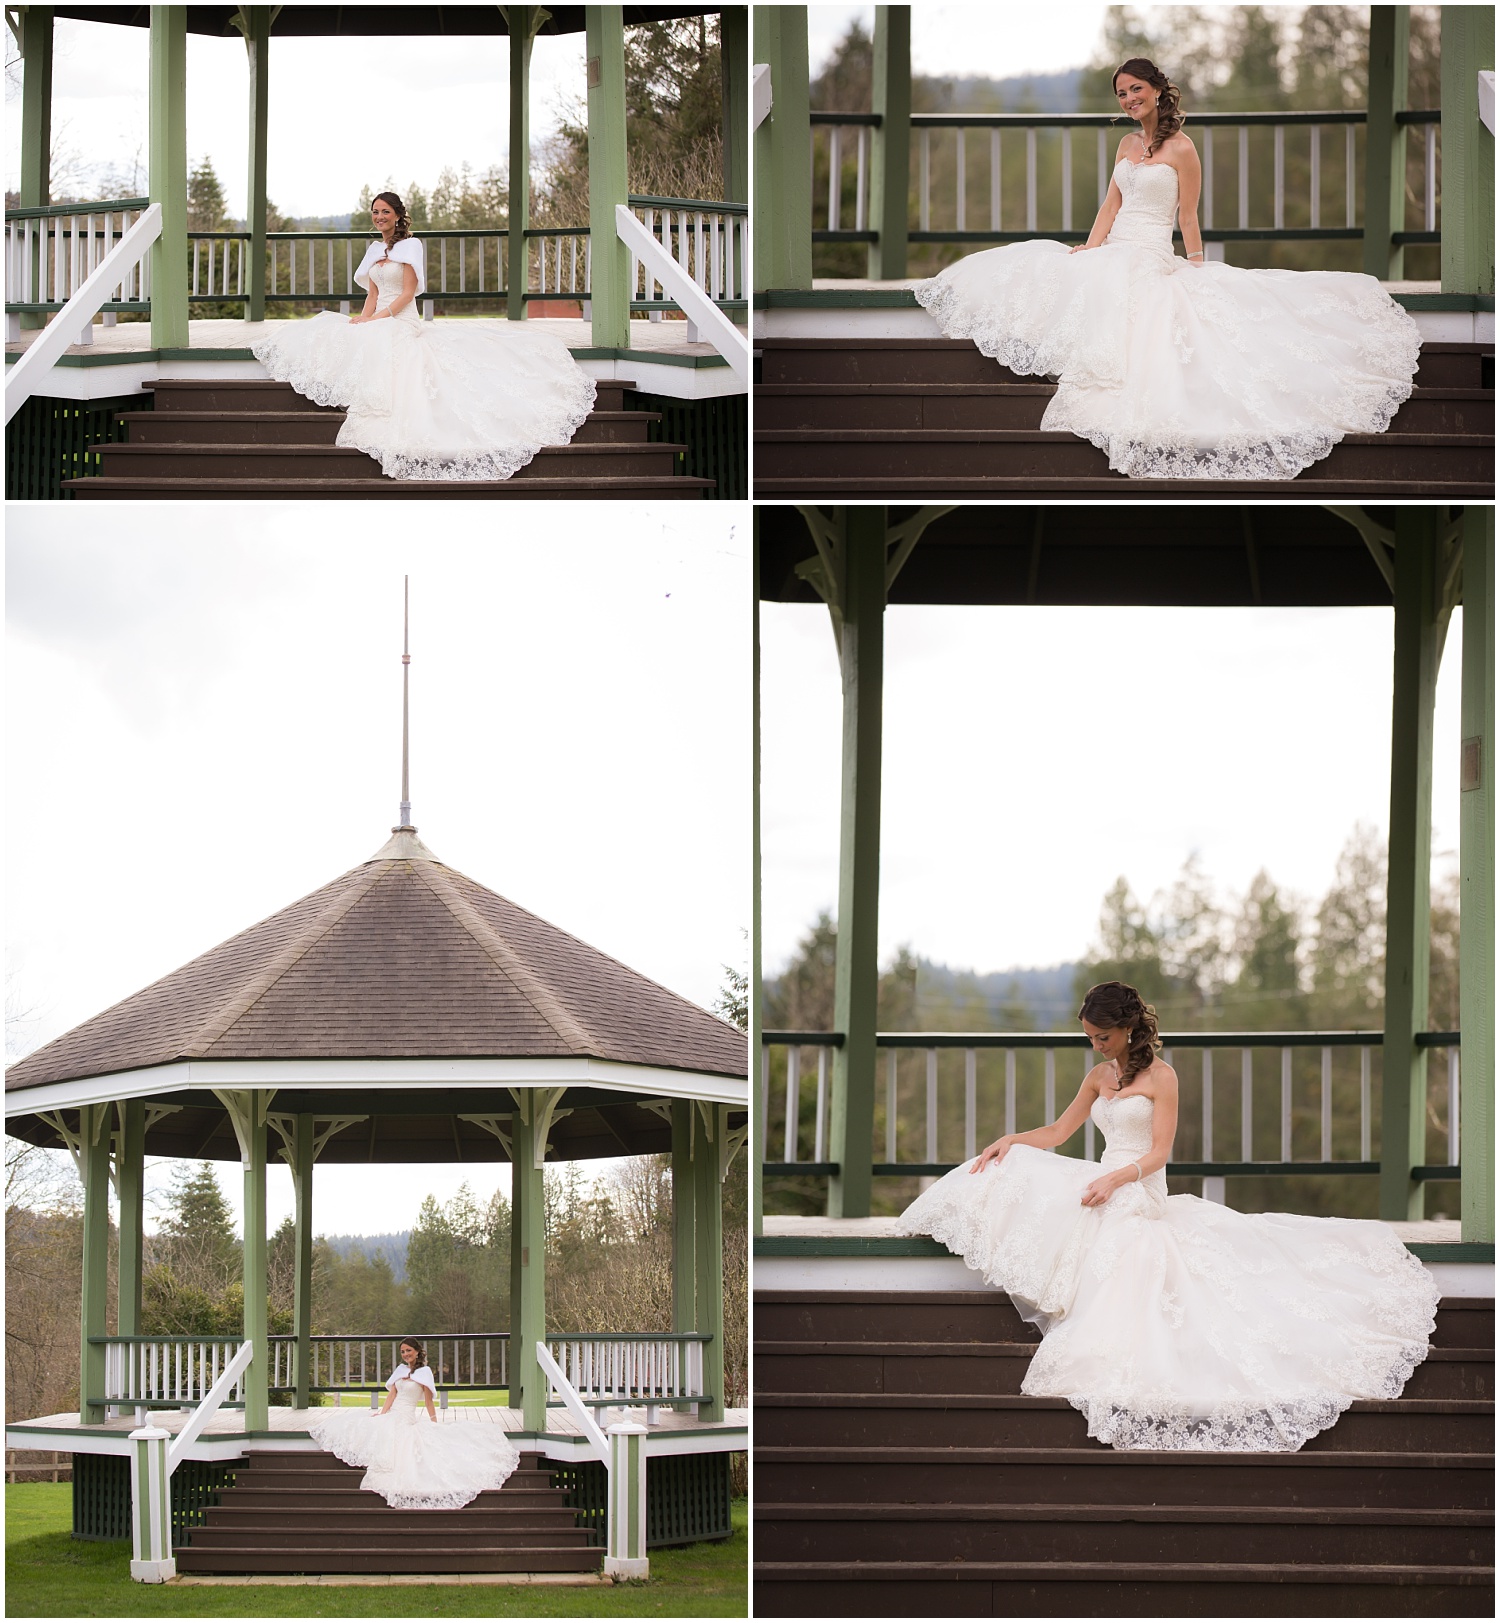 Amazing Day Photography - Mission Wedding Photographer - Hayward Lake Bridal Session - Langley Wedding Photographer (5).jpg